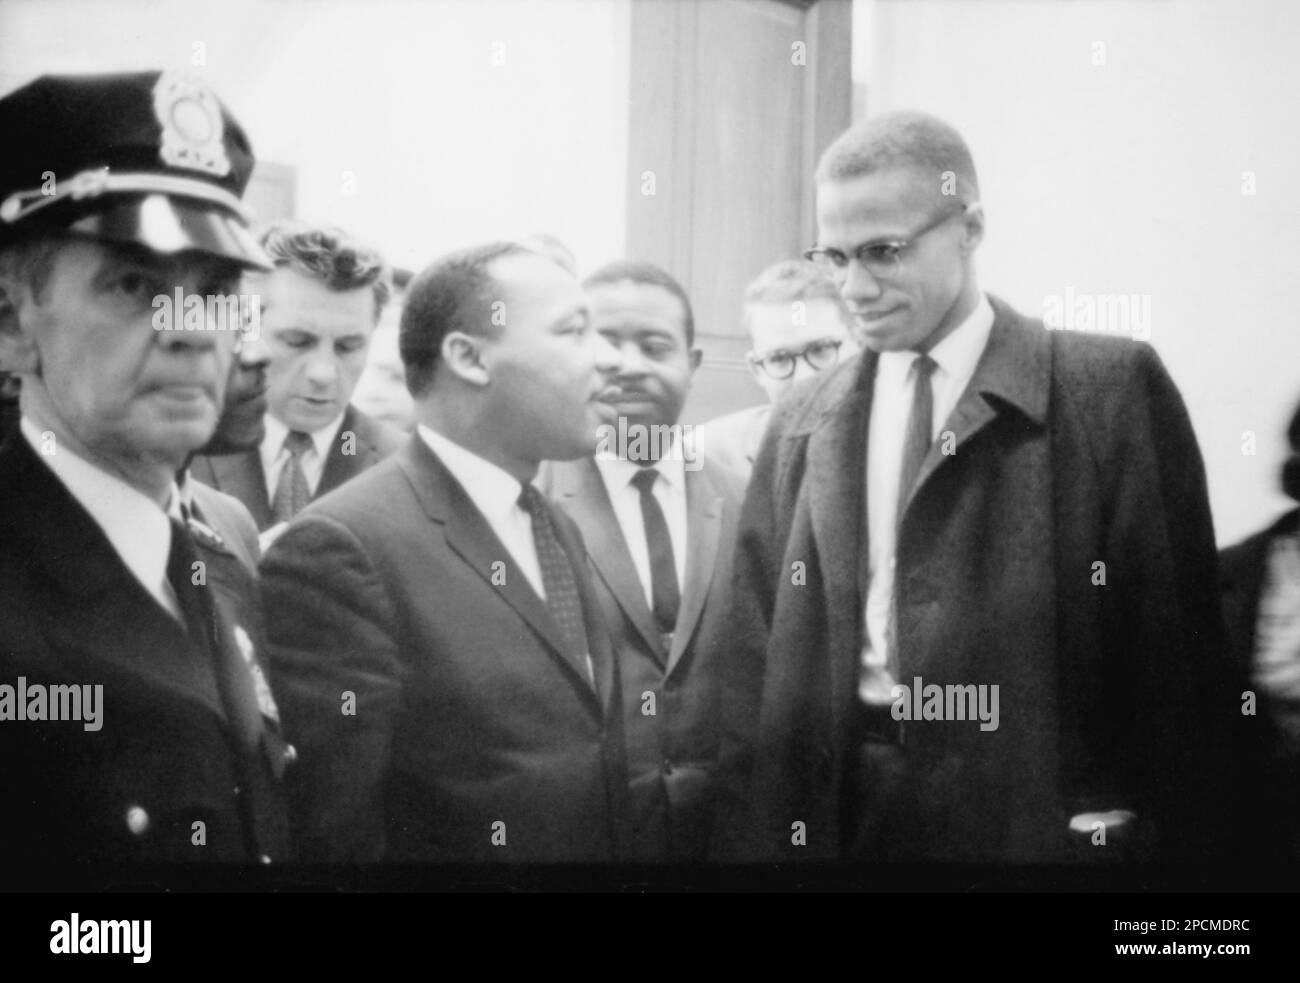 1964 , 26 marzo, USA: Il Rev. Americano Martin Luther King ( 1929 - 1968 ) e MALCOM X ( Malcolm Little 1925 - 1965 ) . Entrambi gli uomini erano venuti per ascoltare il dibattito del Senato sulla Legge sui diritti civili del 1964. Questa era l'unica volta che i due uomini si incontrarono; il loro incontro durò solo un minuto. Foto di Marion S. Trikosko , fotografo degli Stati Uniti News & World Report - Stati Uniti - USA - ritratto - ritratto - cravatta - cravatta - colletto - colletto - lente - occhiali da vista - DIRITTI CIVILI ---- NON PER USO PUBBLICITARIO --- NON PER uso PUBBLICITARIO -- - NON PER USO GADGET -- ---- ARCHIVIO GBB Foto Stock